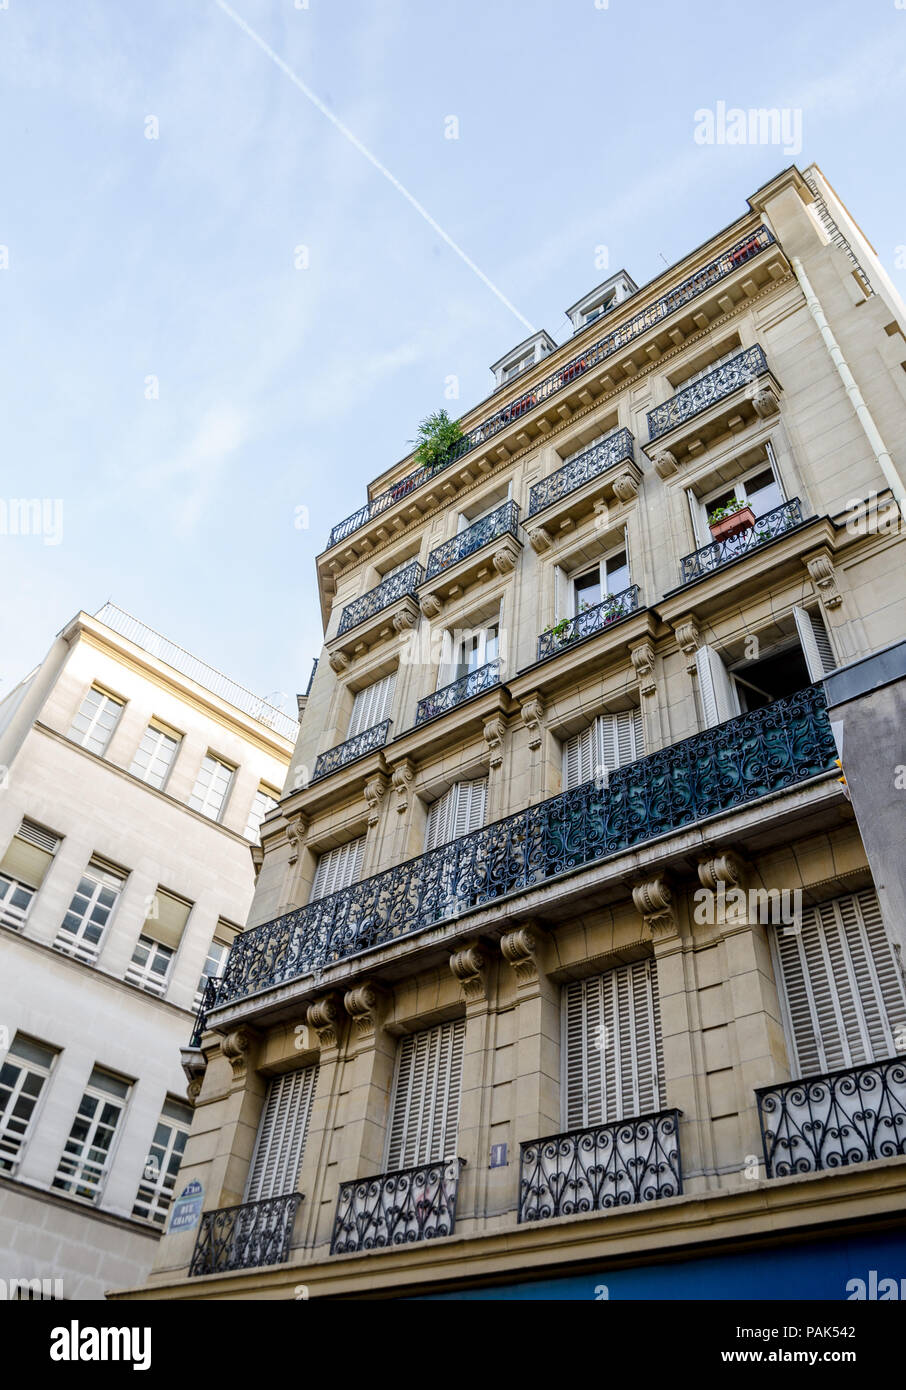 Vers le haut de la perspective classique parisien bâtiments historiques avec de beaux détails dans une vue générique de cette merveilleuse ville européenne Banque D'Images